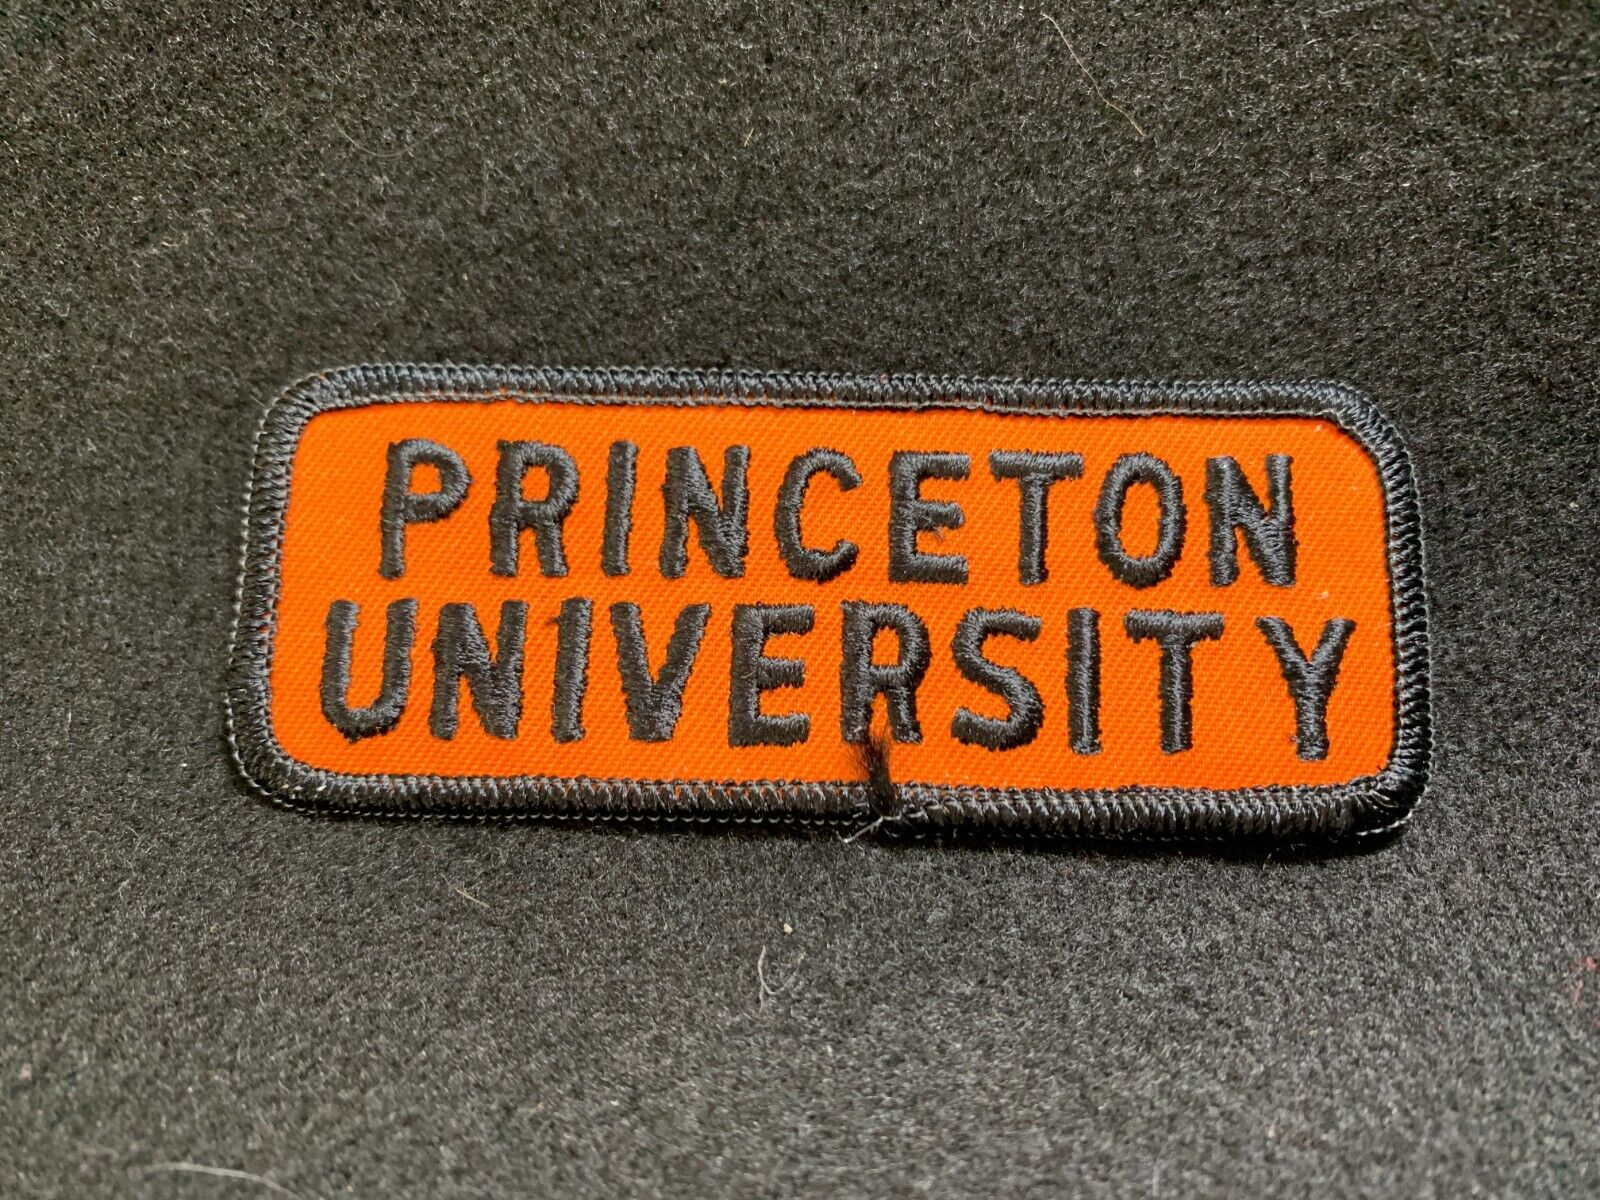 Vintage Princeton University Patch